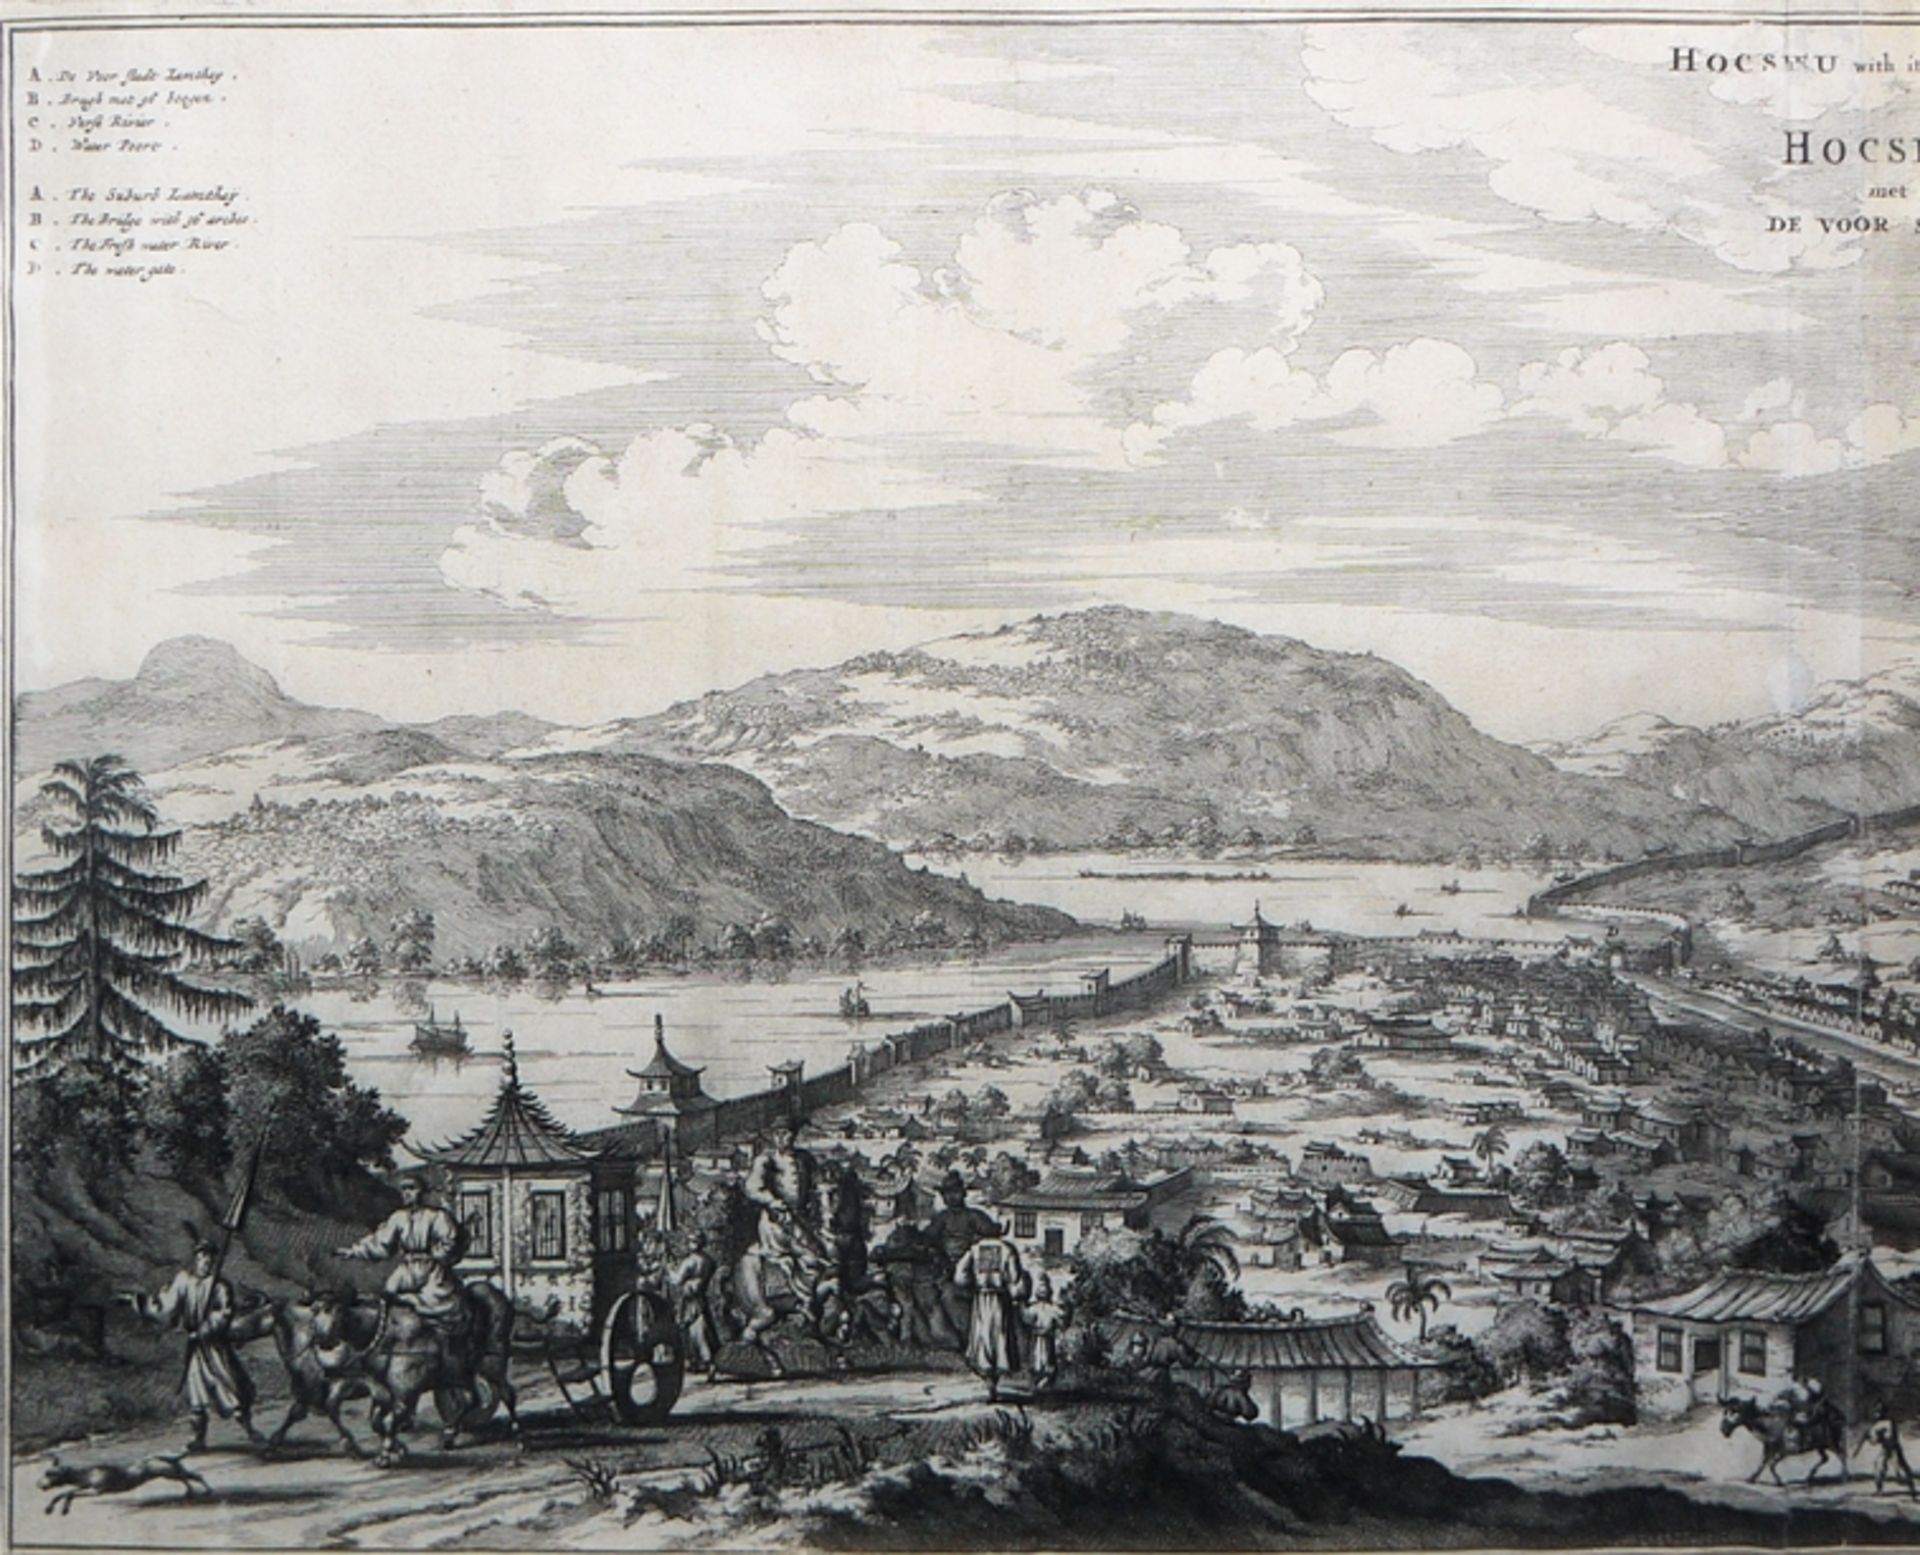 Johan Nieuhof, "Hocsieu with its suburbs / Hocsieu met de voor Stadt", view of the harbour city of  - Image 3 of 4